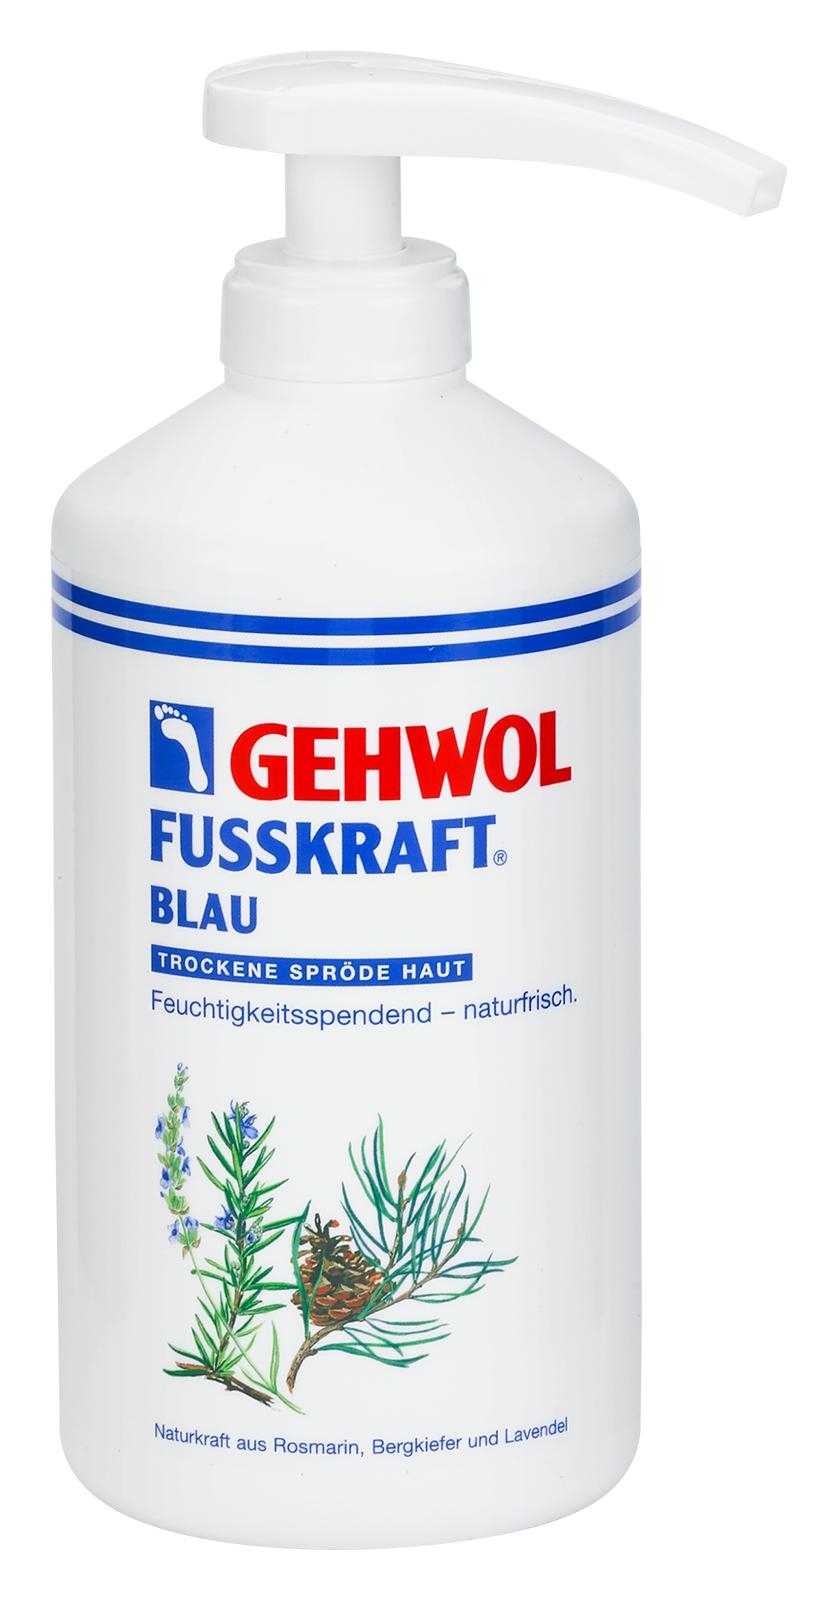 GEHWOL FUSSKRAFT BLAU 500 ml